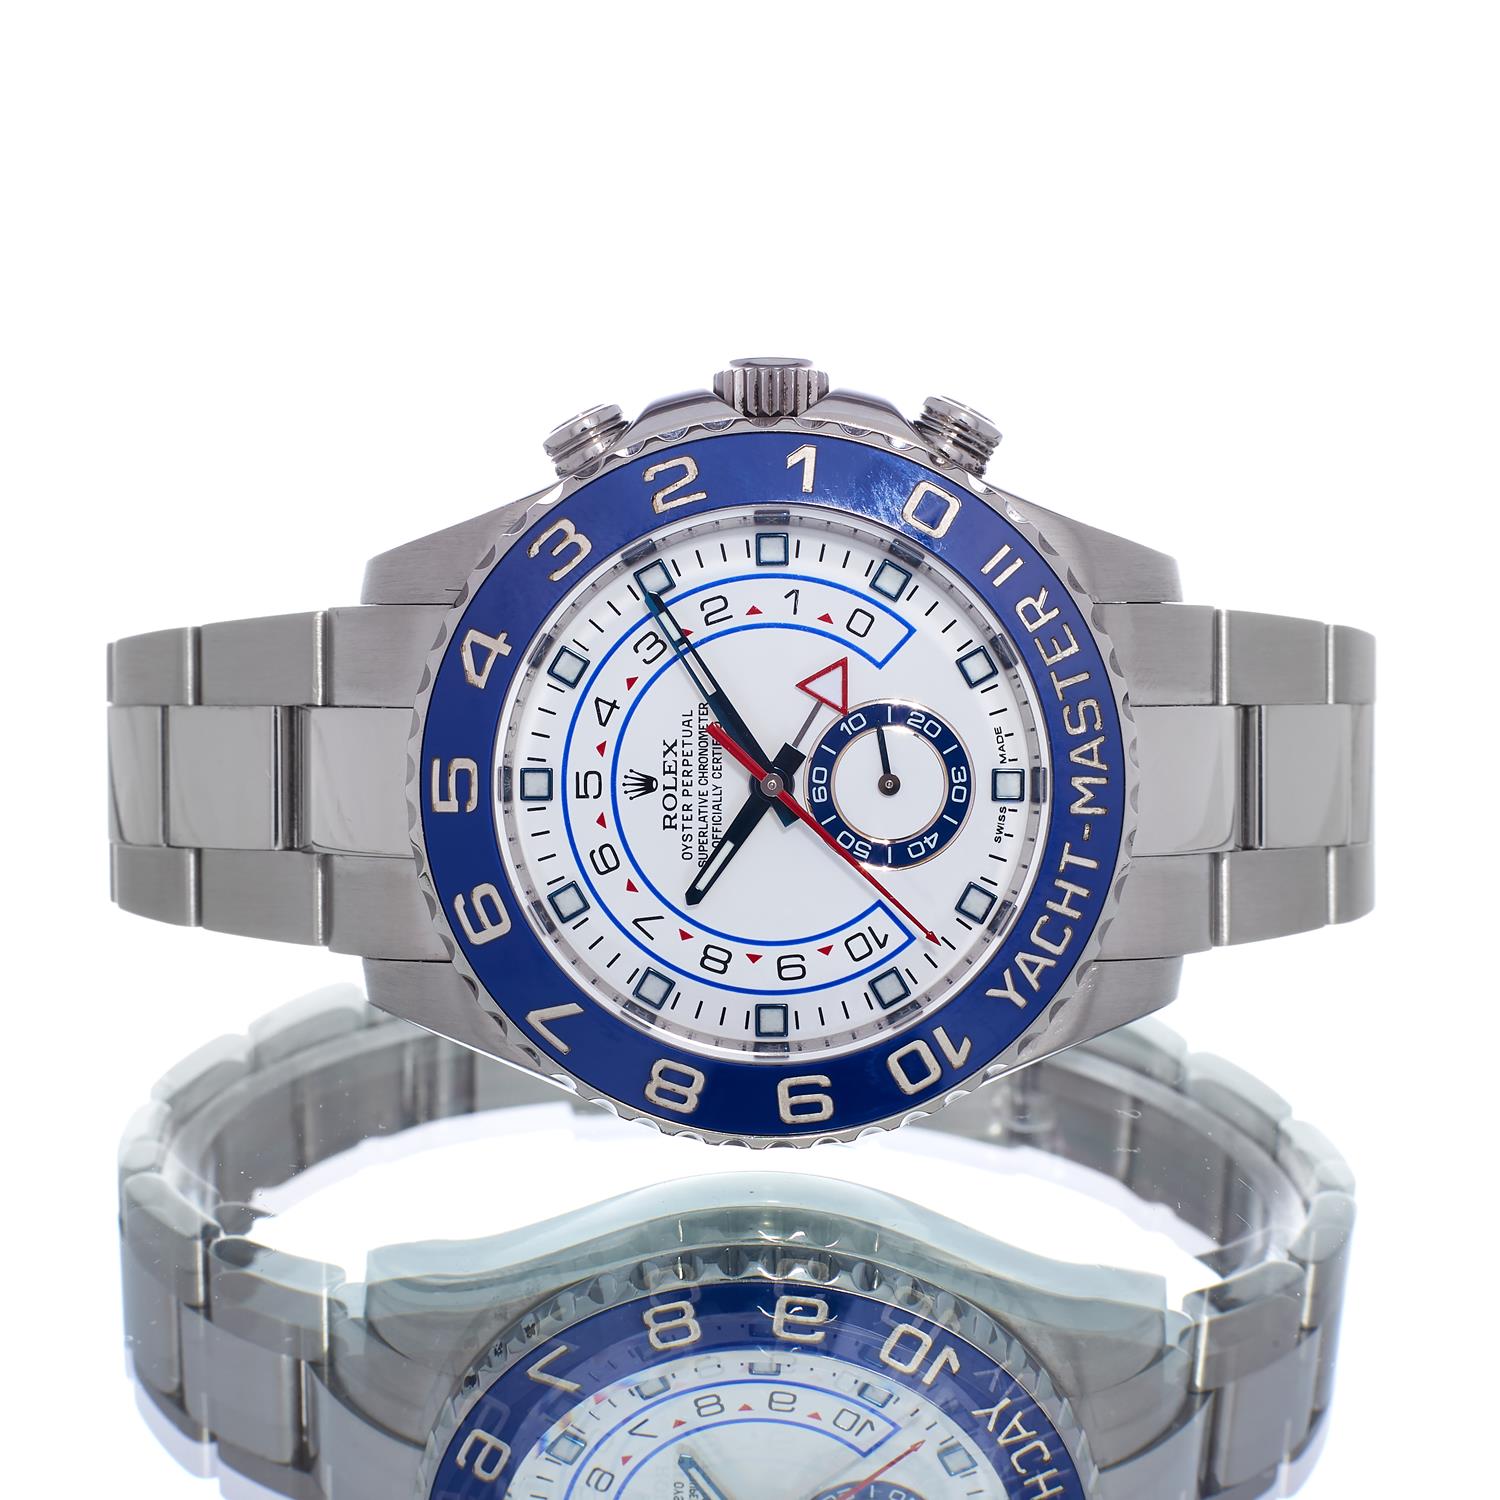 rolex yacht master watch price